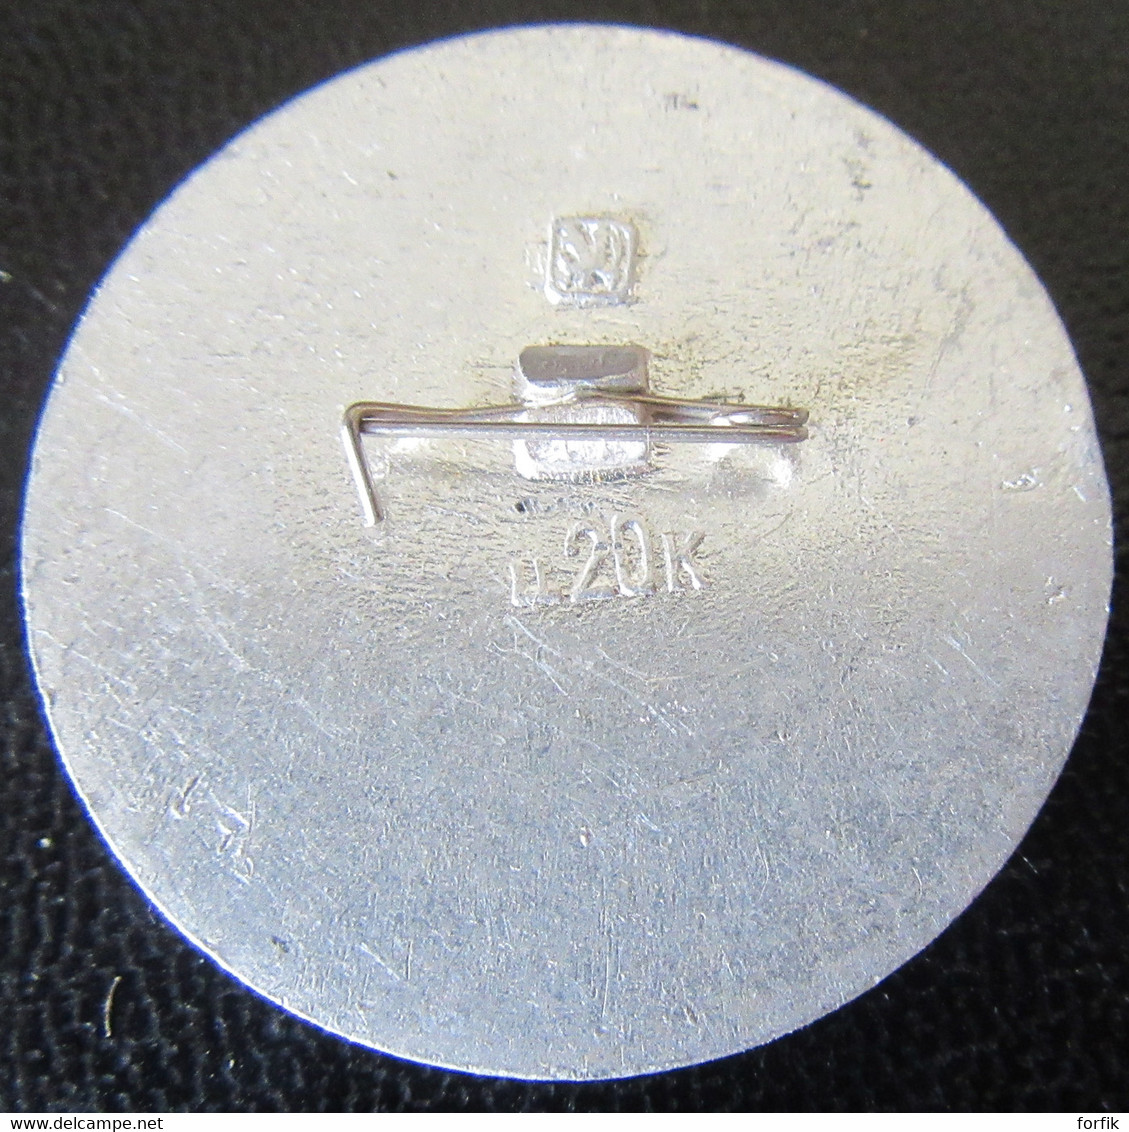 URSS / CCCP - Insigne / Broche Ville De Moscou - Métal Argenté Peint - Diamètre : 38mm - Russia